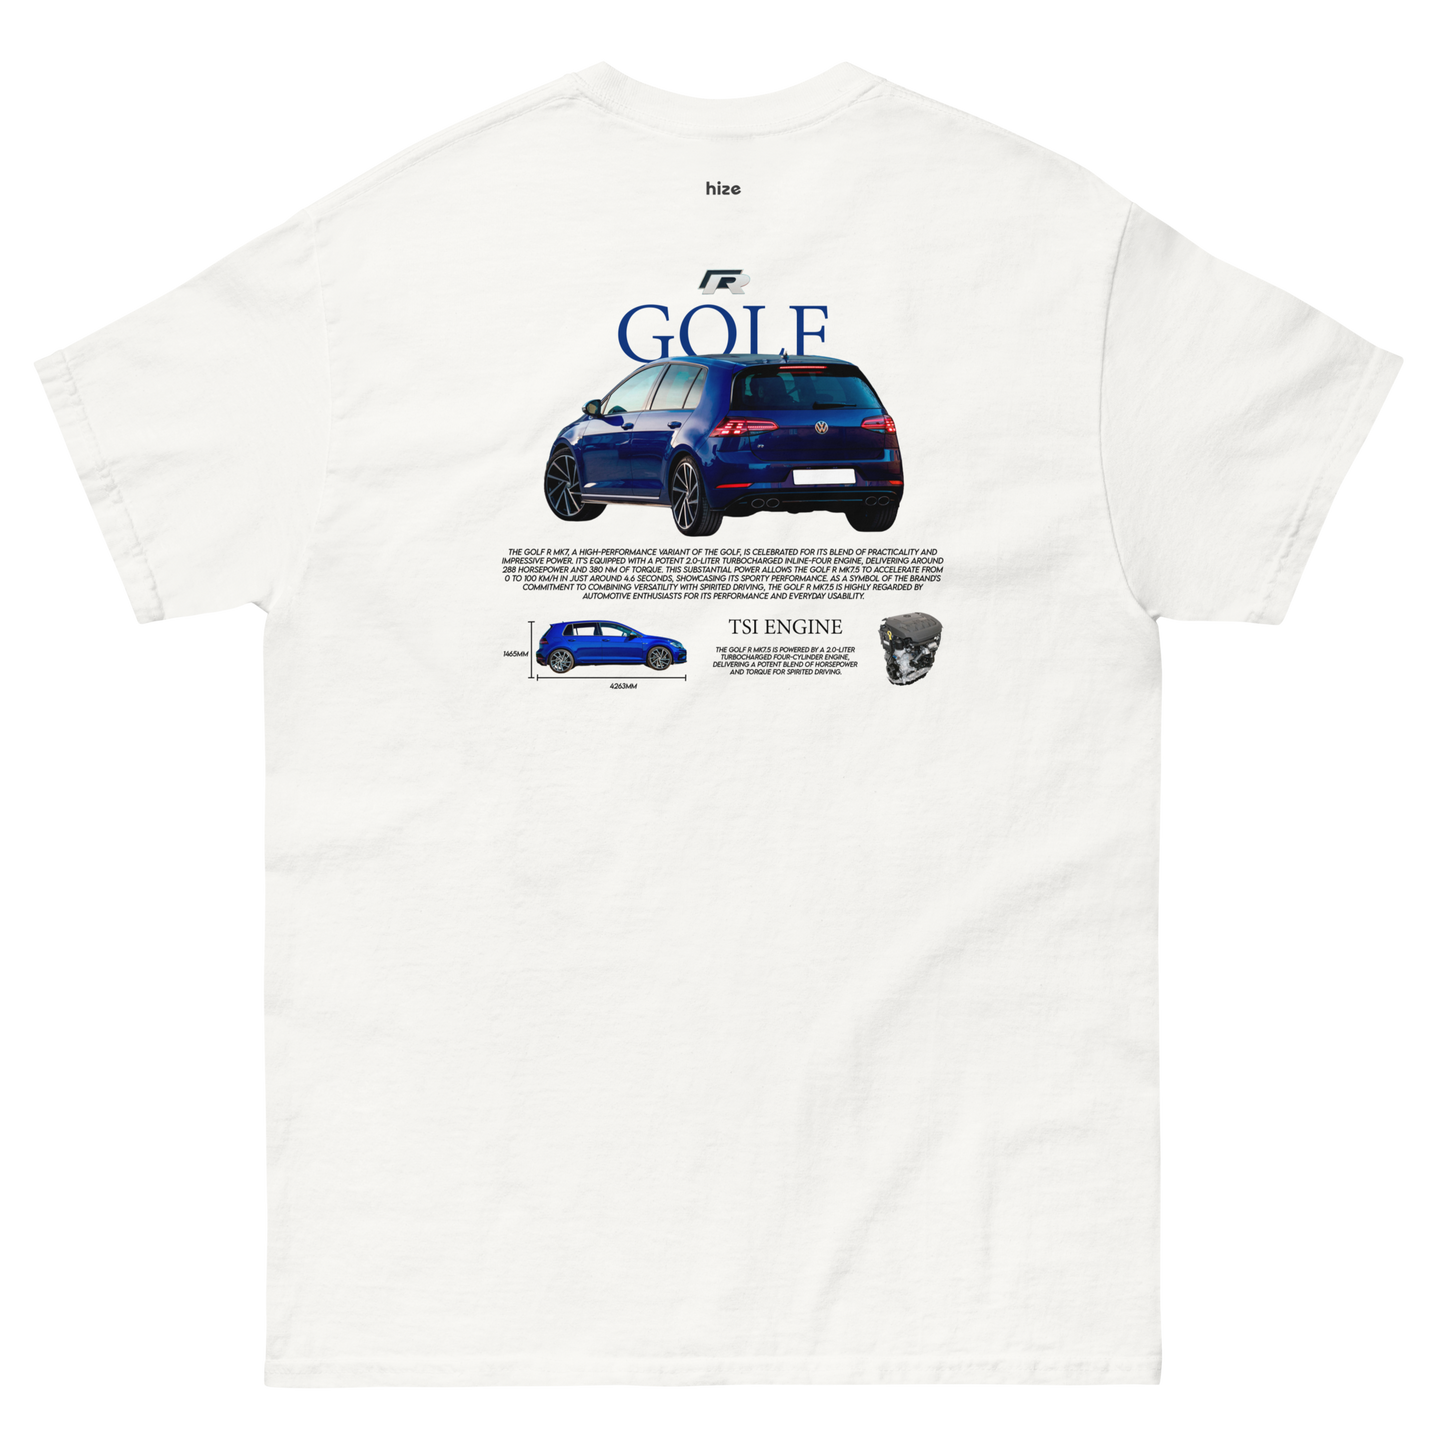 Volkswagen Golf R T-shirt - White Back